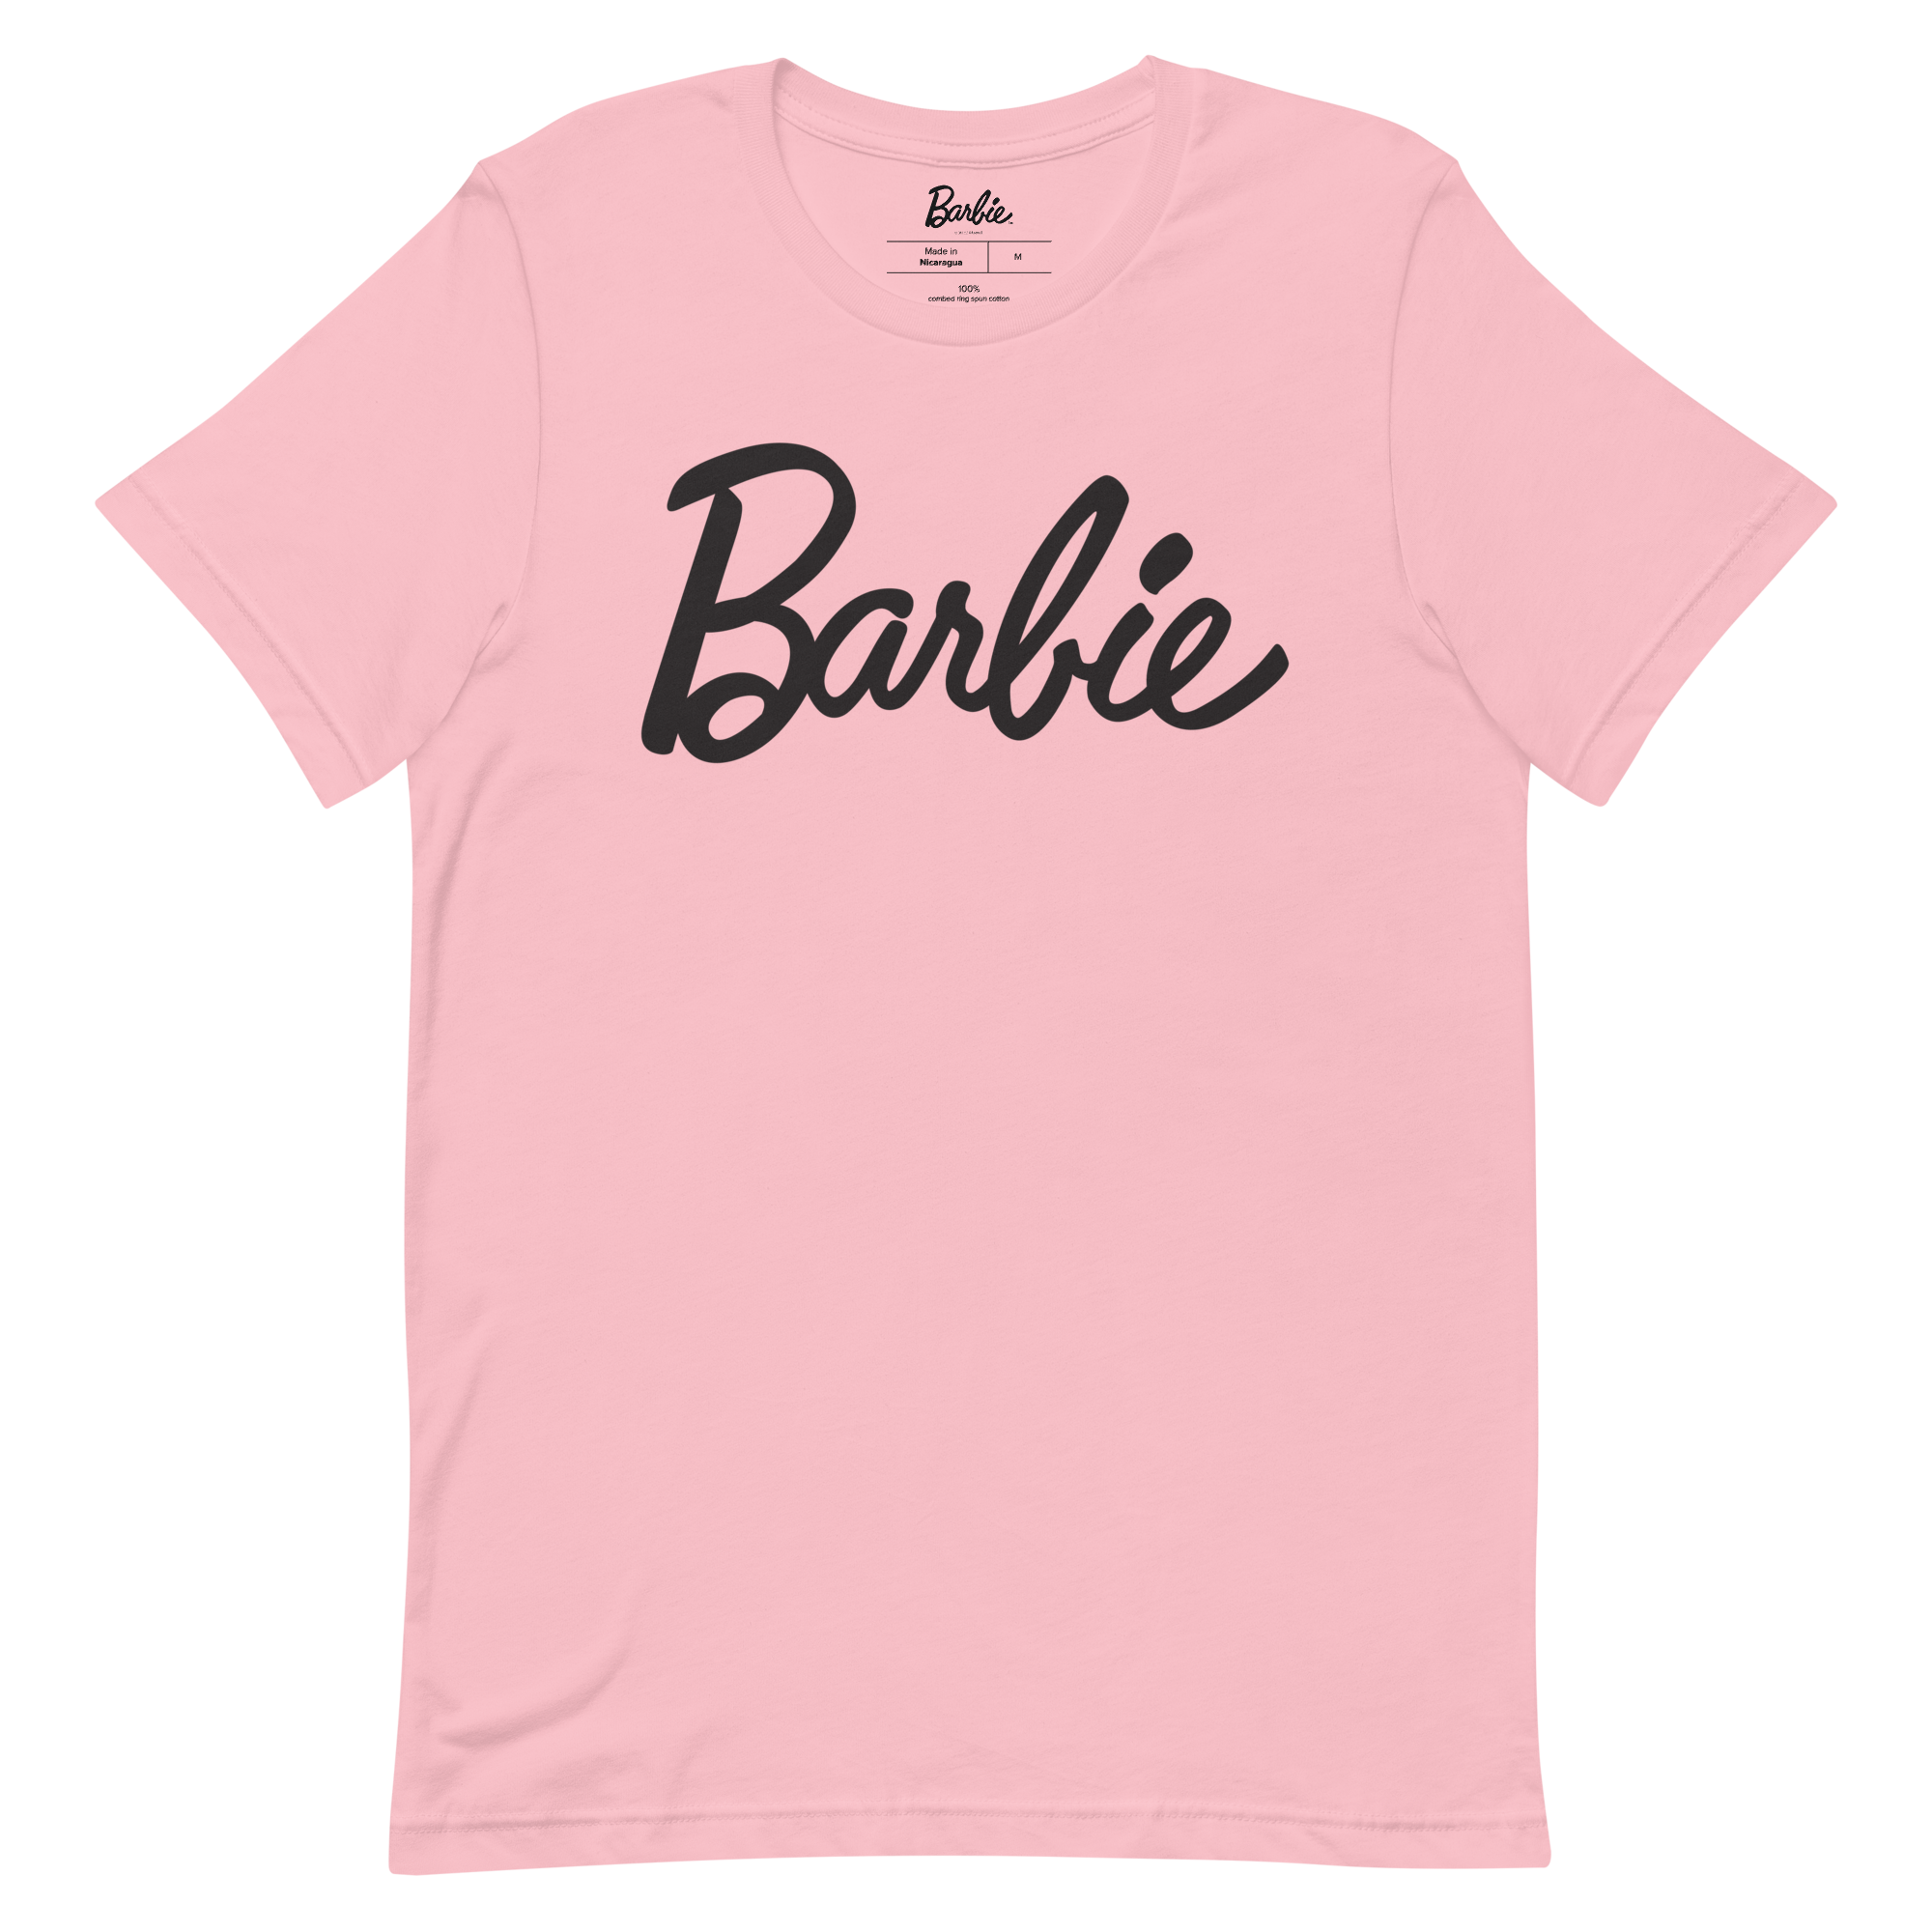 Barbie - Camiseta Barbie Pink Profile, gris, S